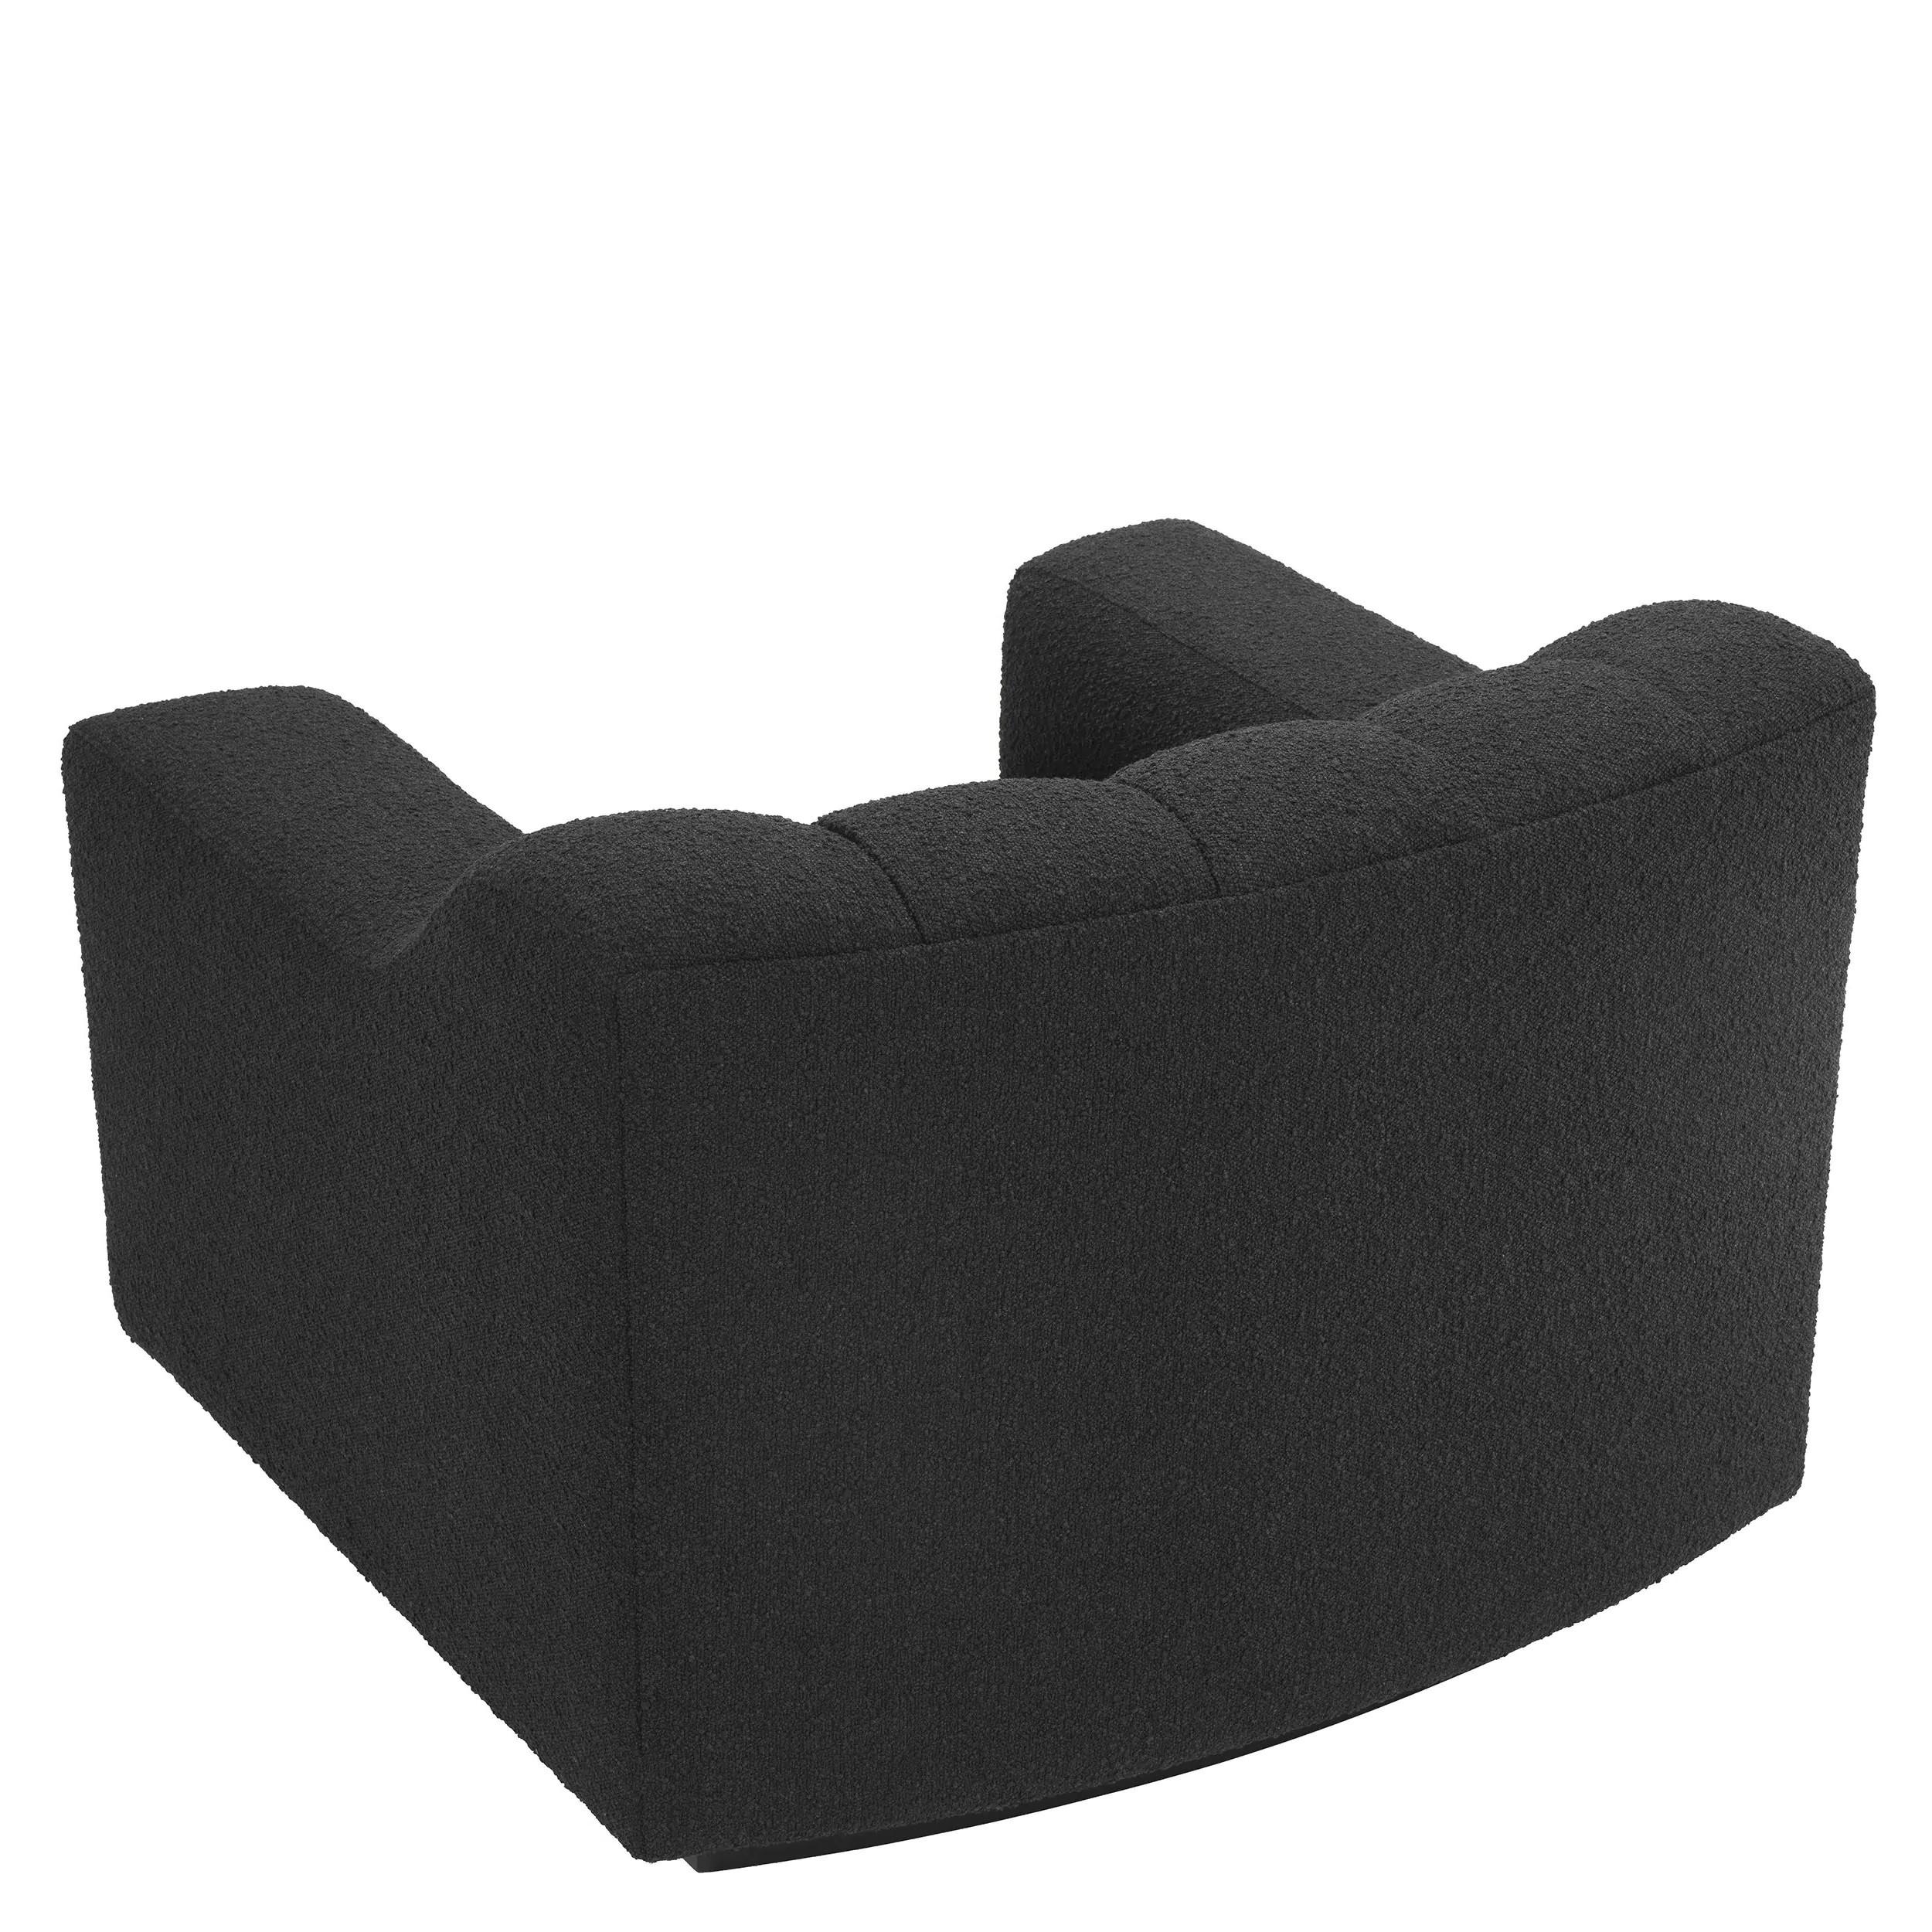 Sessel im Vintage-Design-Stil mit schwarzen Holzfüßen und schwarzem Boucl-Stoff, leicht geschwungen und gepolstert.